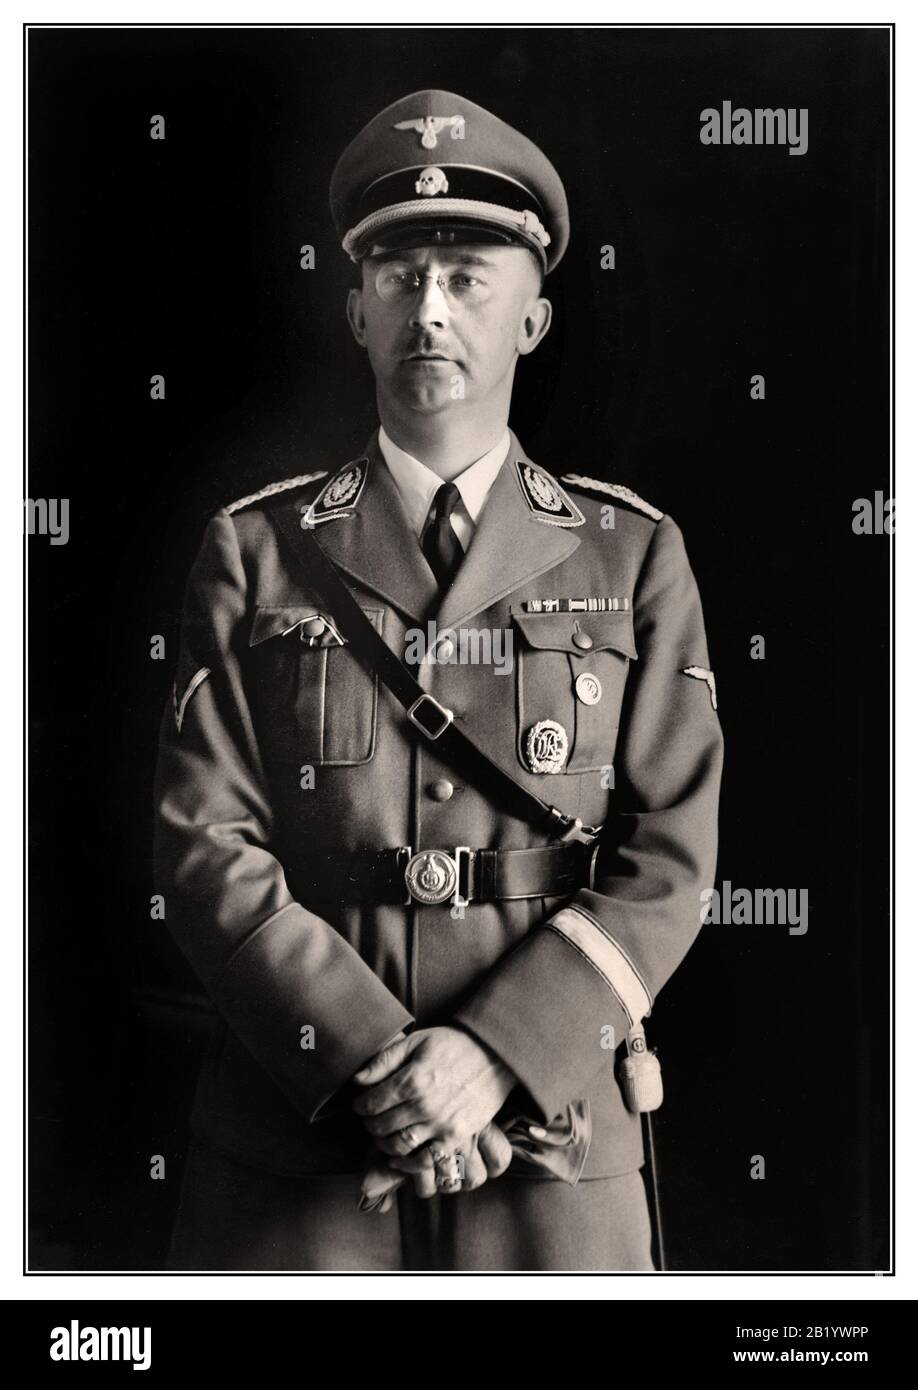 Heinrich Himmler Archivio Ritratto 1940 Reichsführer Heinrich Himmler, Capo di polizia e SS nel Terzo Reich. Ritratto foto scattata in occasione del suo 40th compleanno. Heinrich Luitpold Himmler era Reichsführer dello Schutzstaffel, ed un membro principale del partito nazista di Germania. Himmler era uno degli uomini più potenti della Germania nazista e un architetto principale dell'Olocausto. Senza dubbio colpevole di crimini di guerra contro l'umanità, si suicidò mentre era in custodia in attesa di processo. Foto Stock